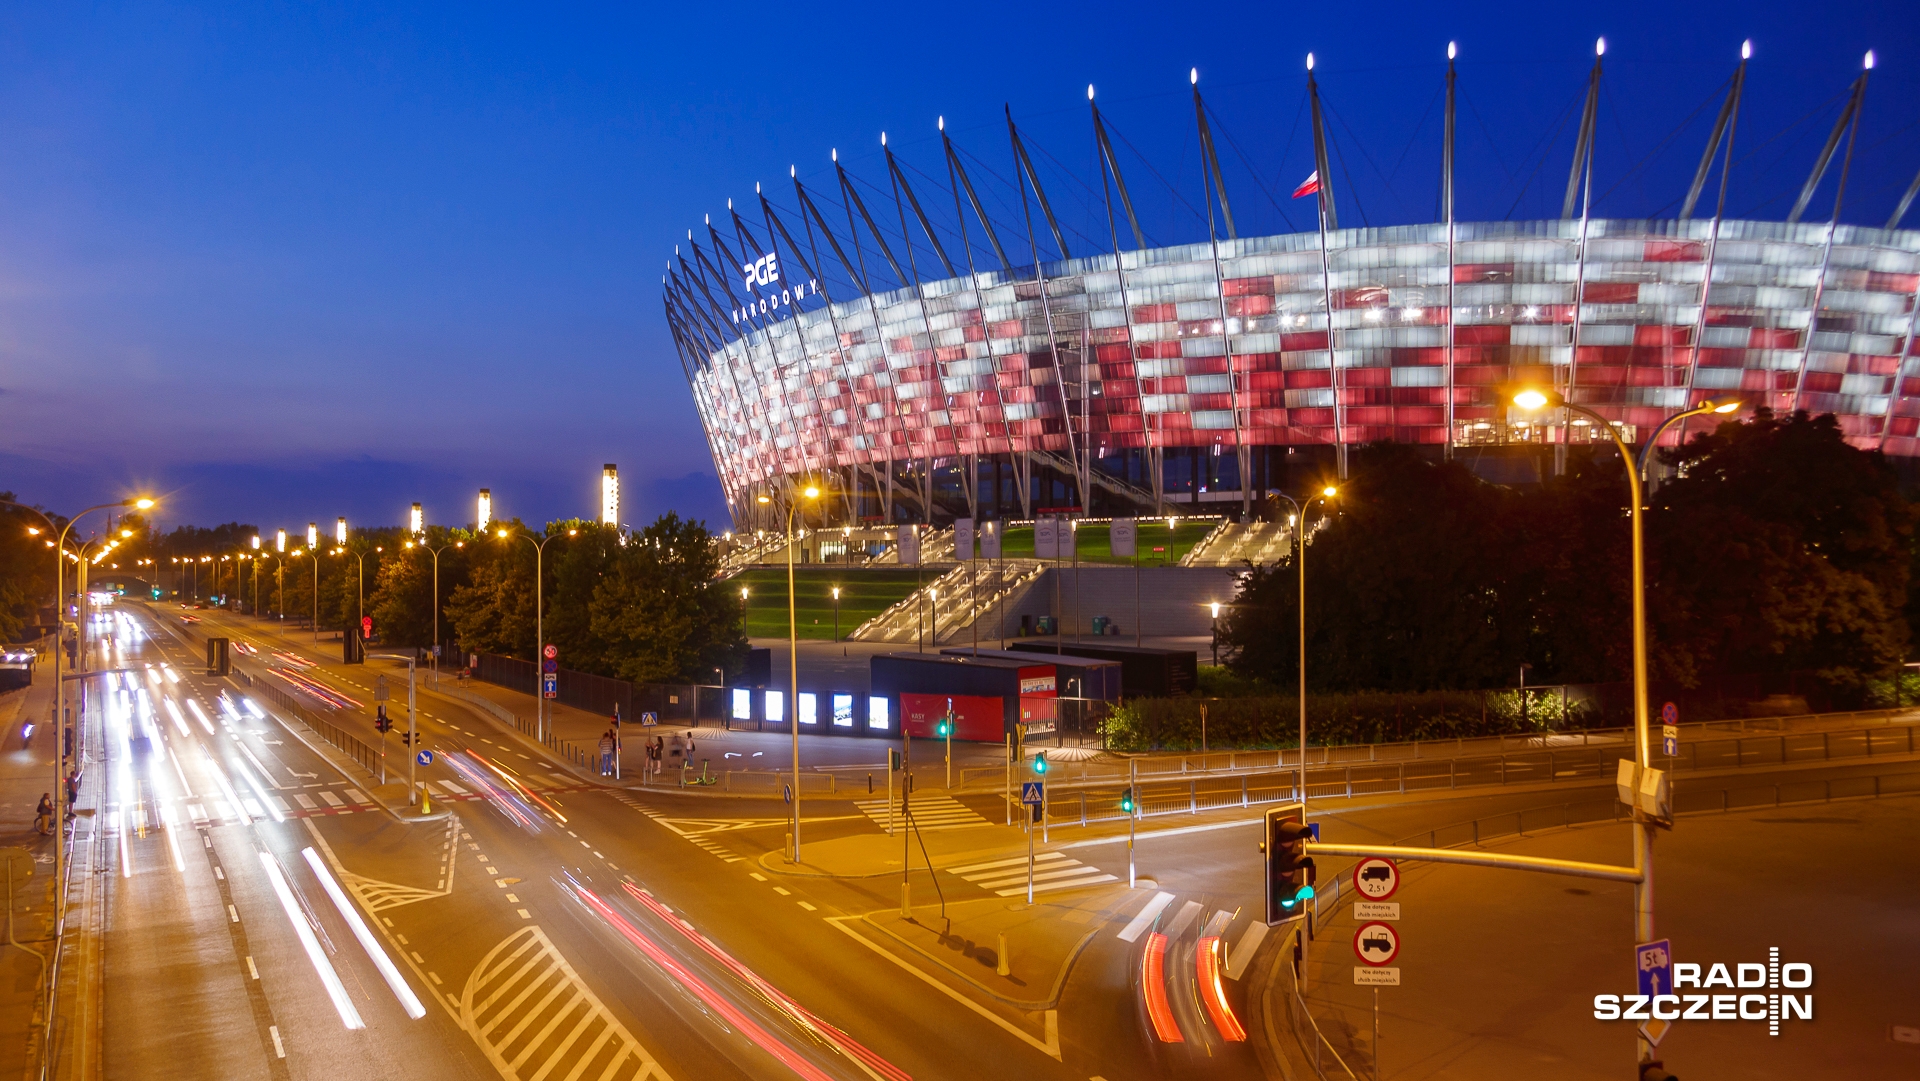 Piłkarska reprezentacja Polski zagra w poniedziałek z Albanią w drugiej kolejce kwalifikacji do przyszłorocznych mistrzostw Europy w Niemczech. Mecz odbędzie się na Stadionie Narodowym w Warszawie.